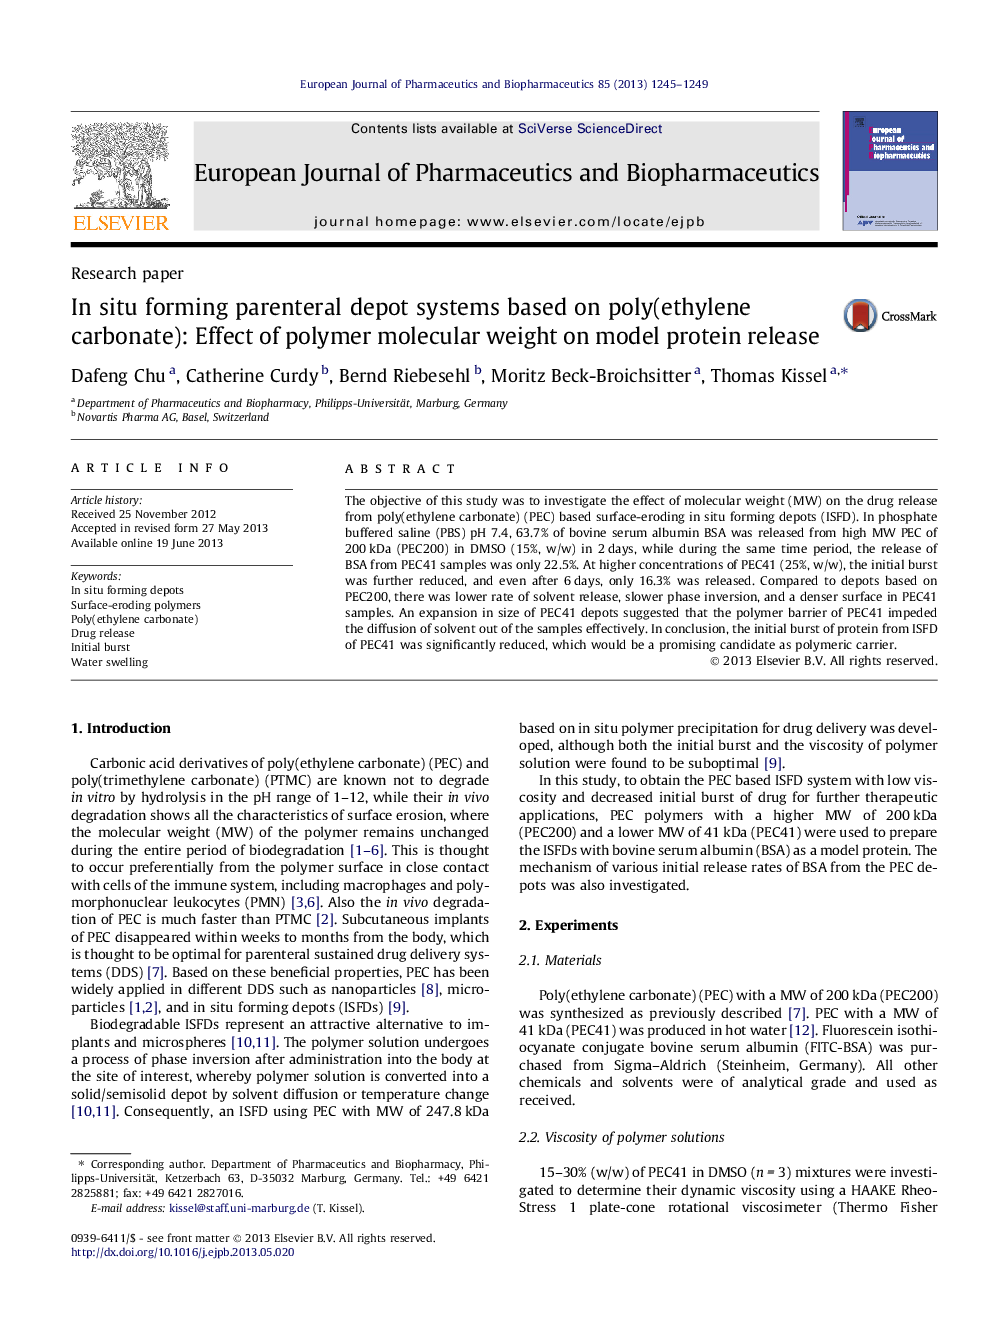 سیستم های انبارداری تزریقی مبتنی بر پلی (اتیلن کربناته) در داخل محلول: اثر وزن مولکولی پلیمر بر انتشار پروتئین مدل 